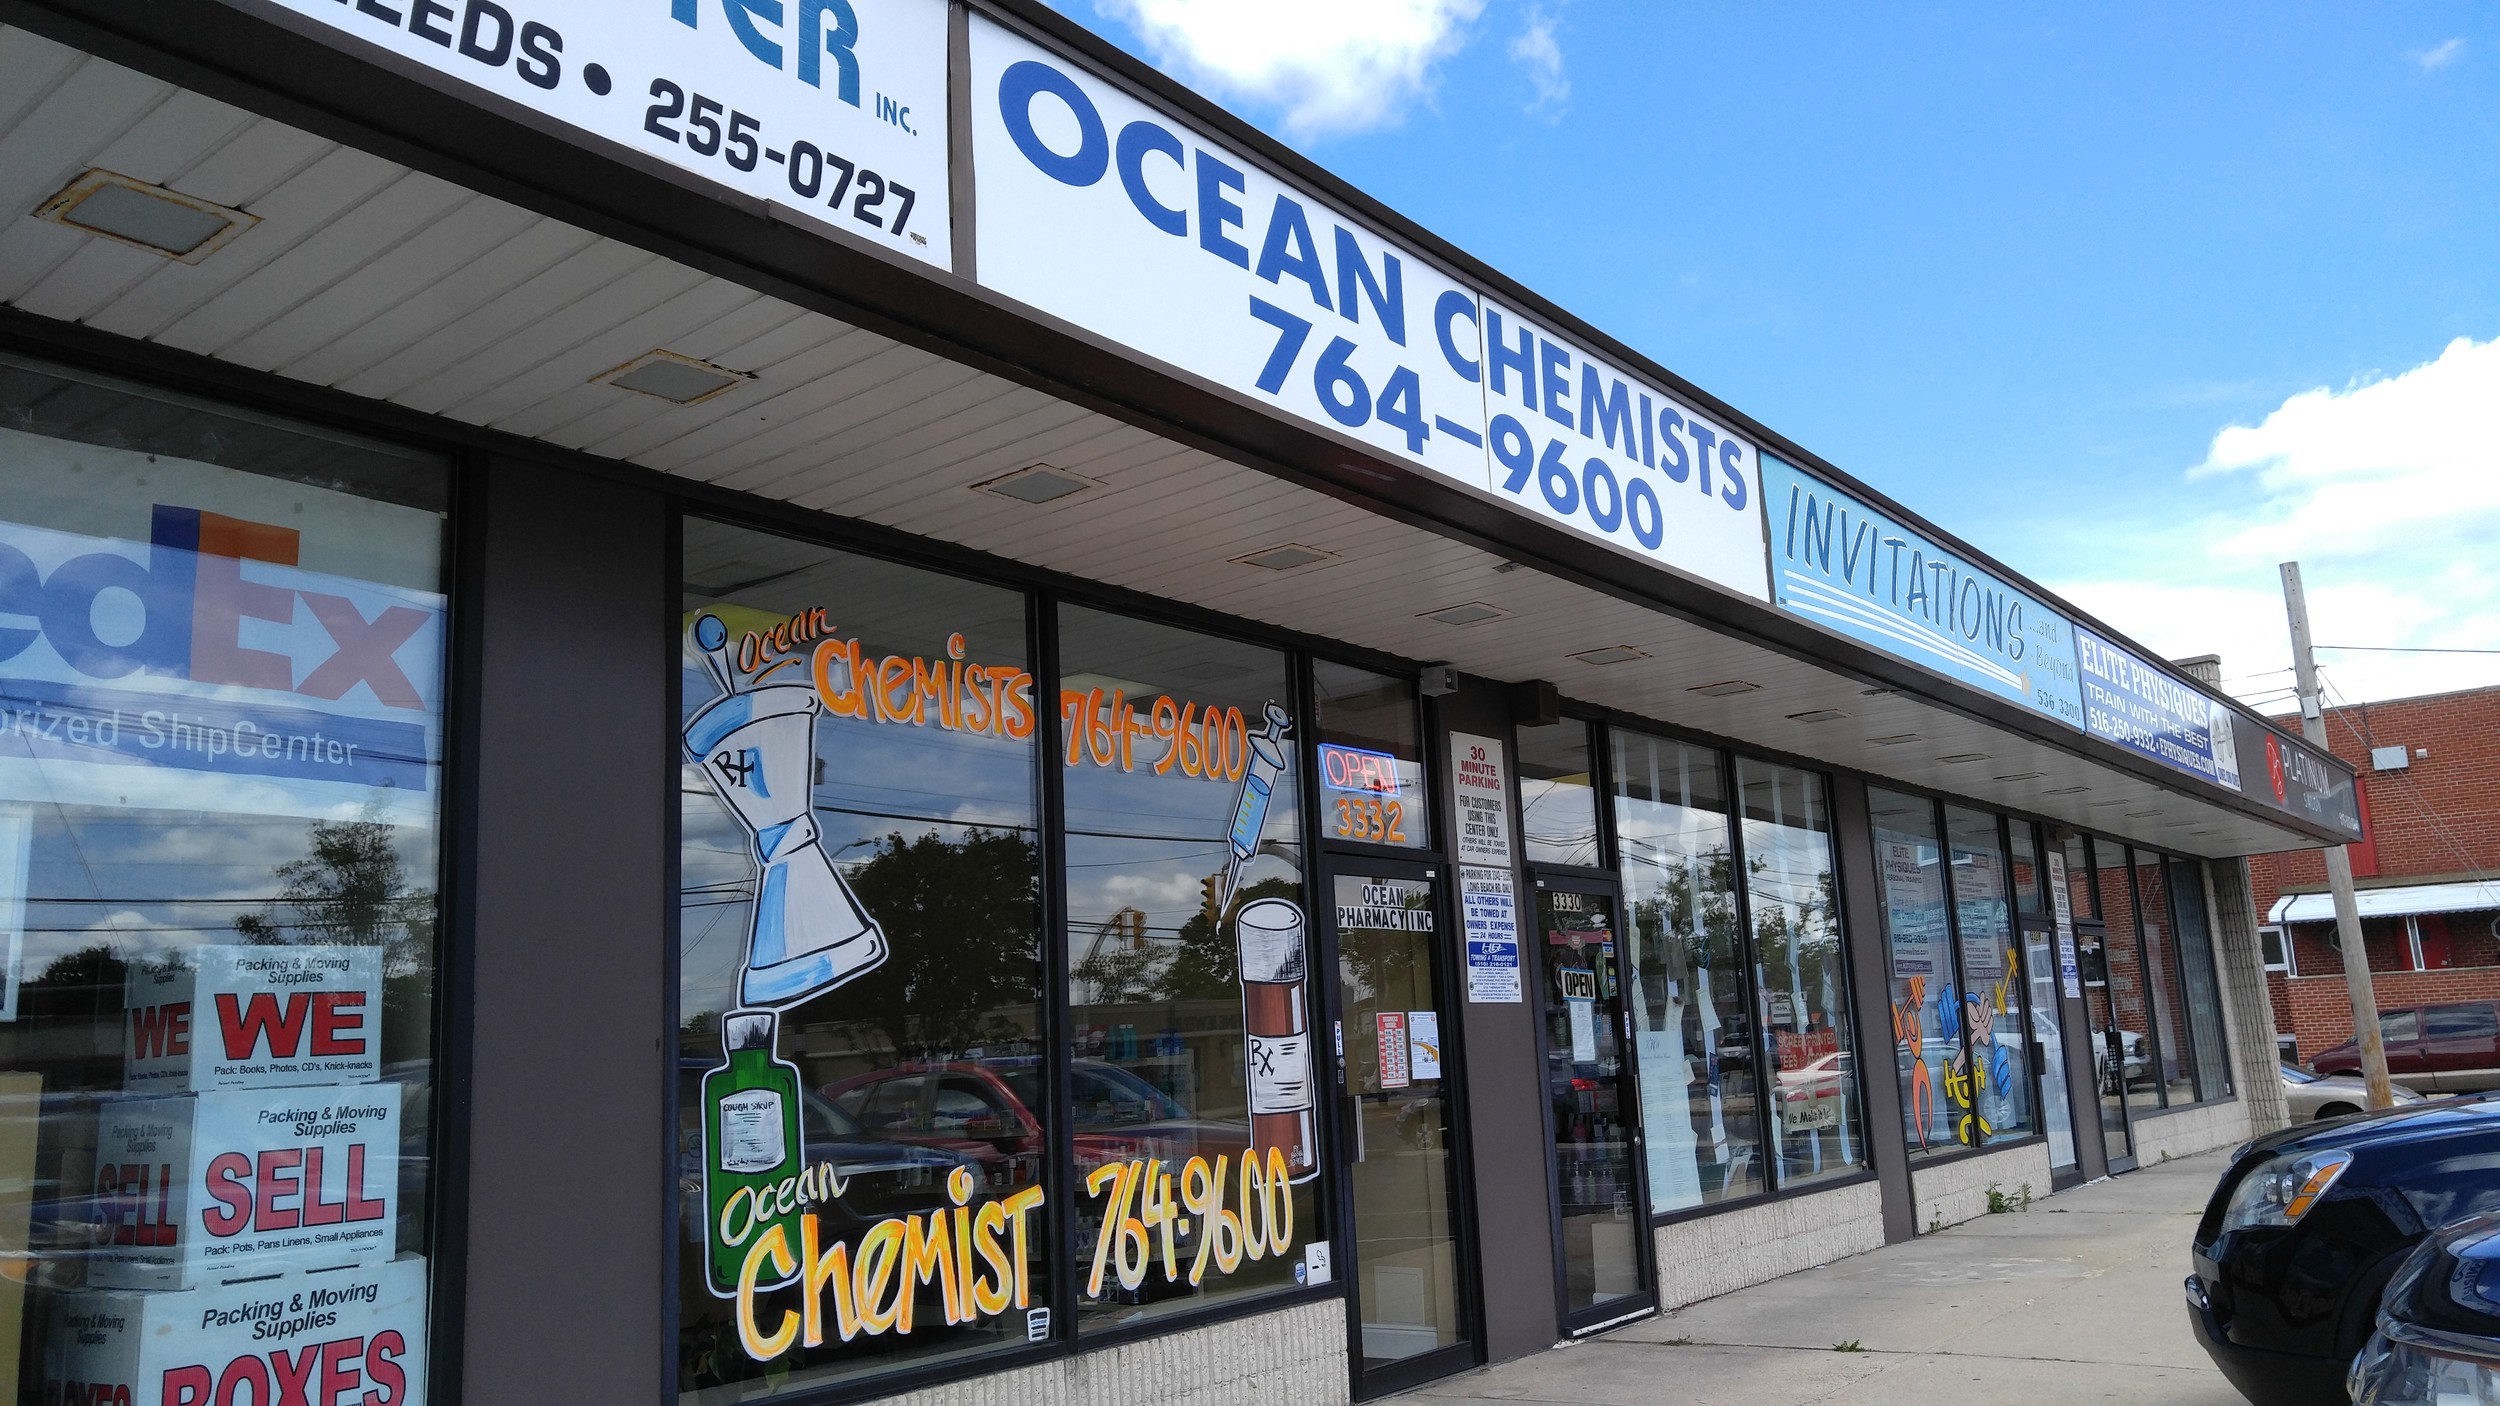 The temporary location for Ocean Chemist.